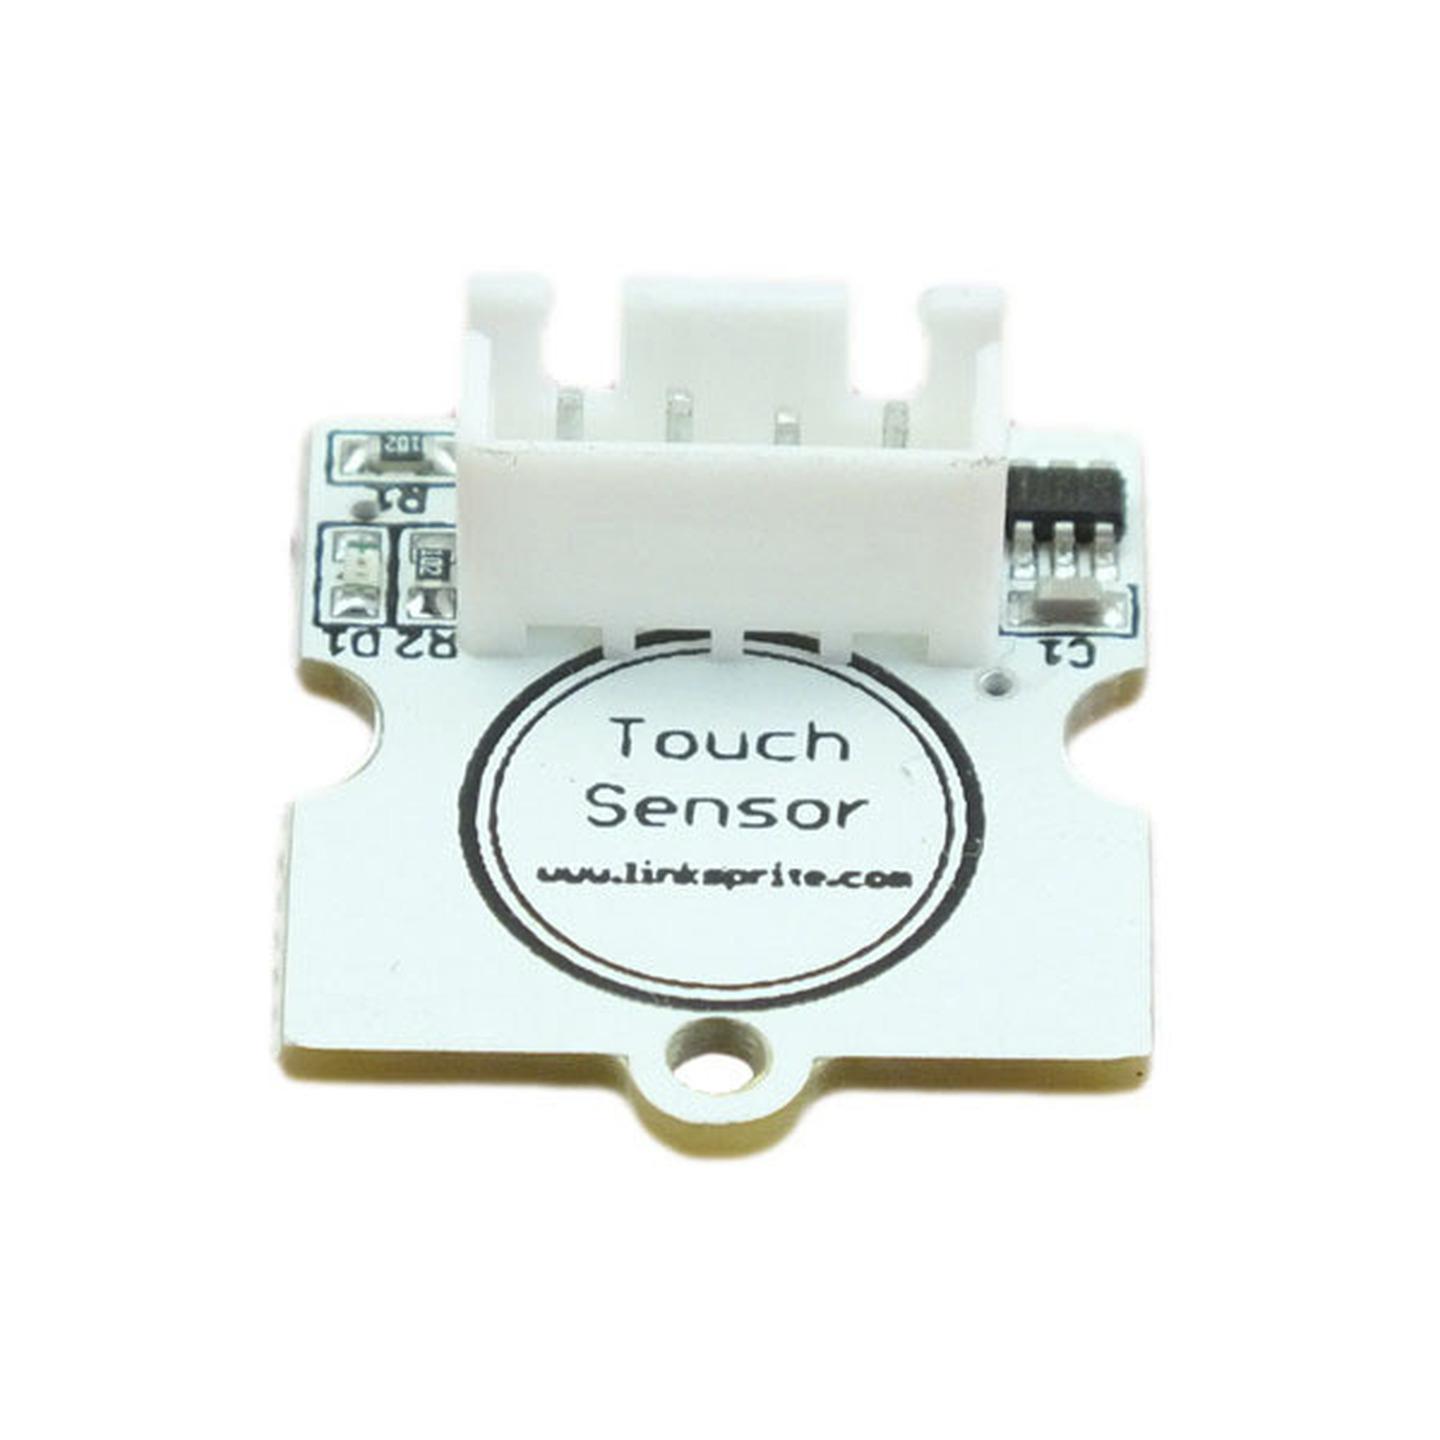 Linker Touch Sensor for Arduino